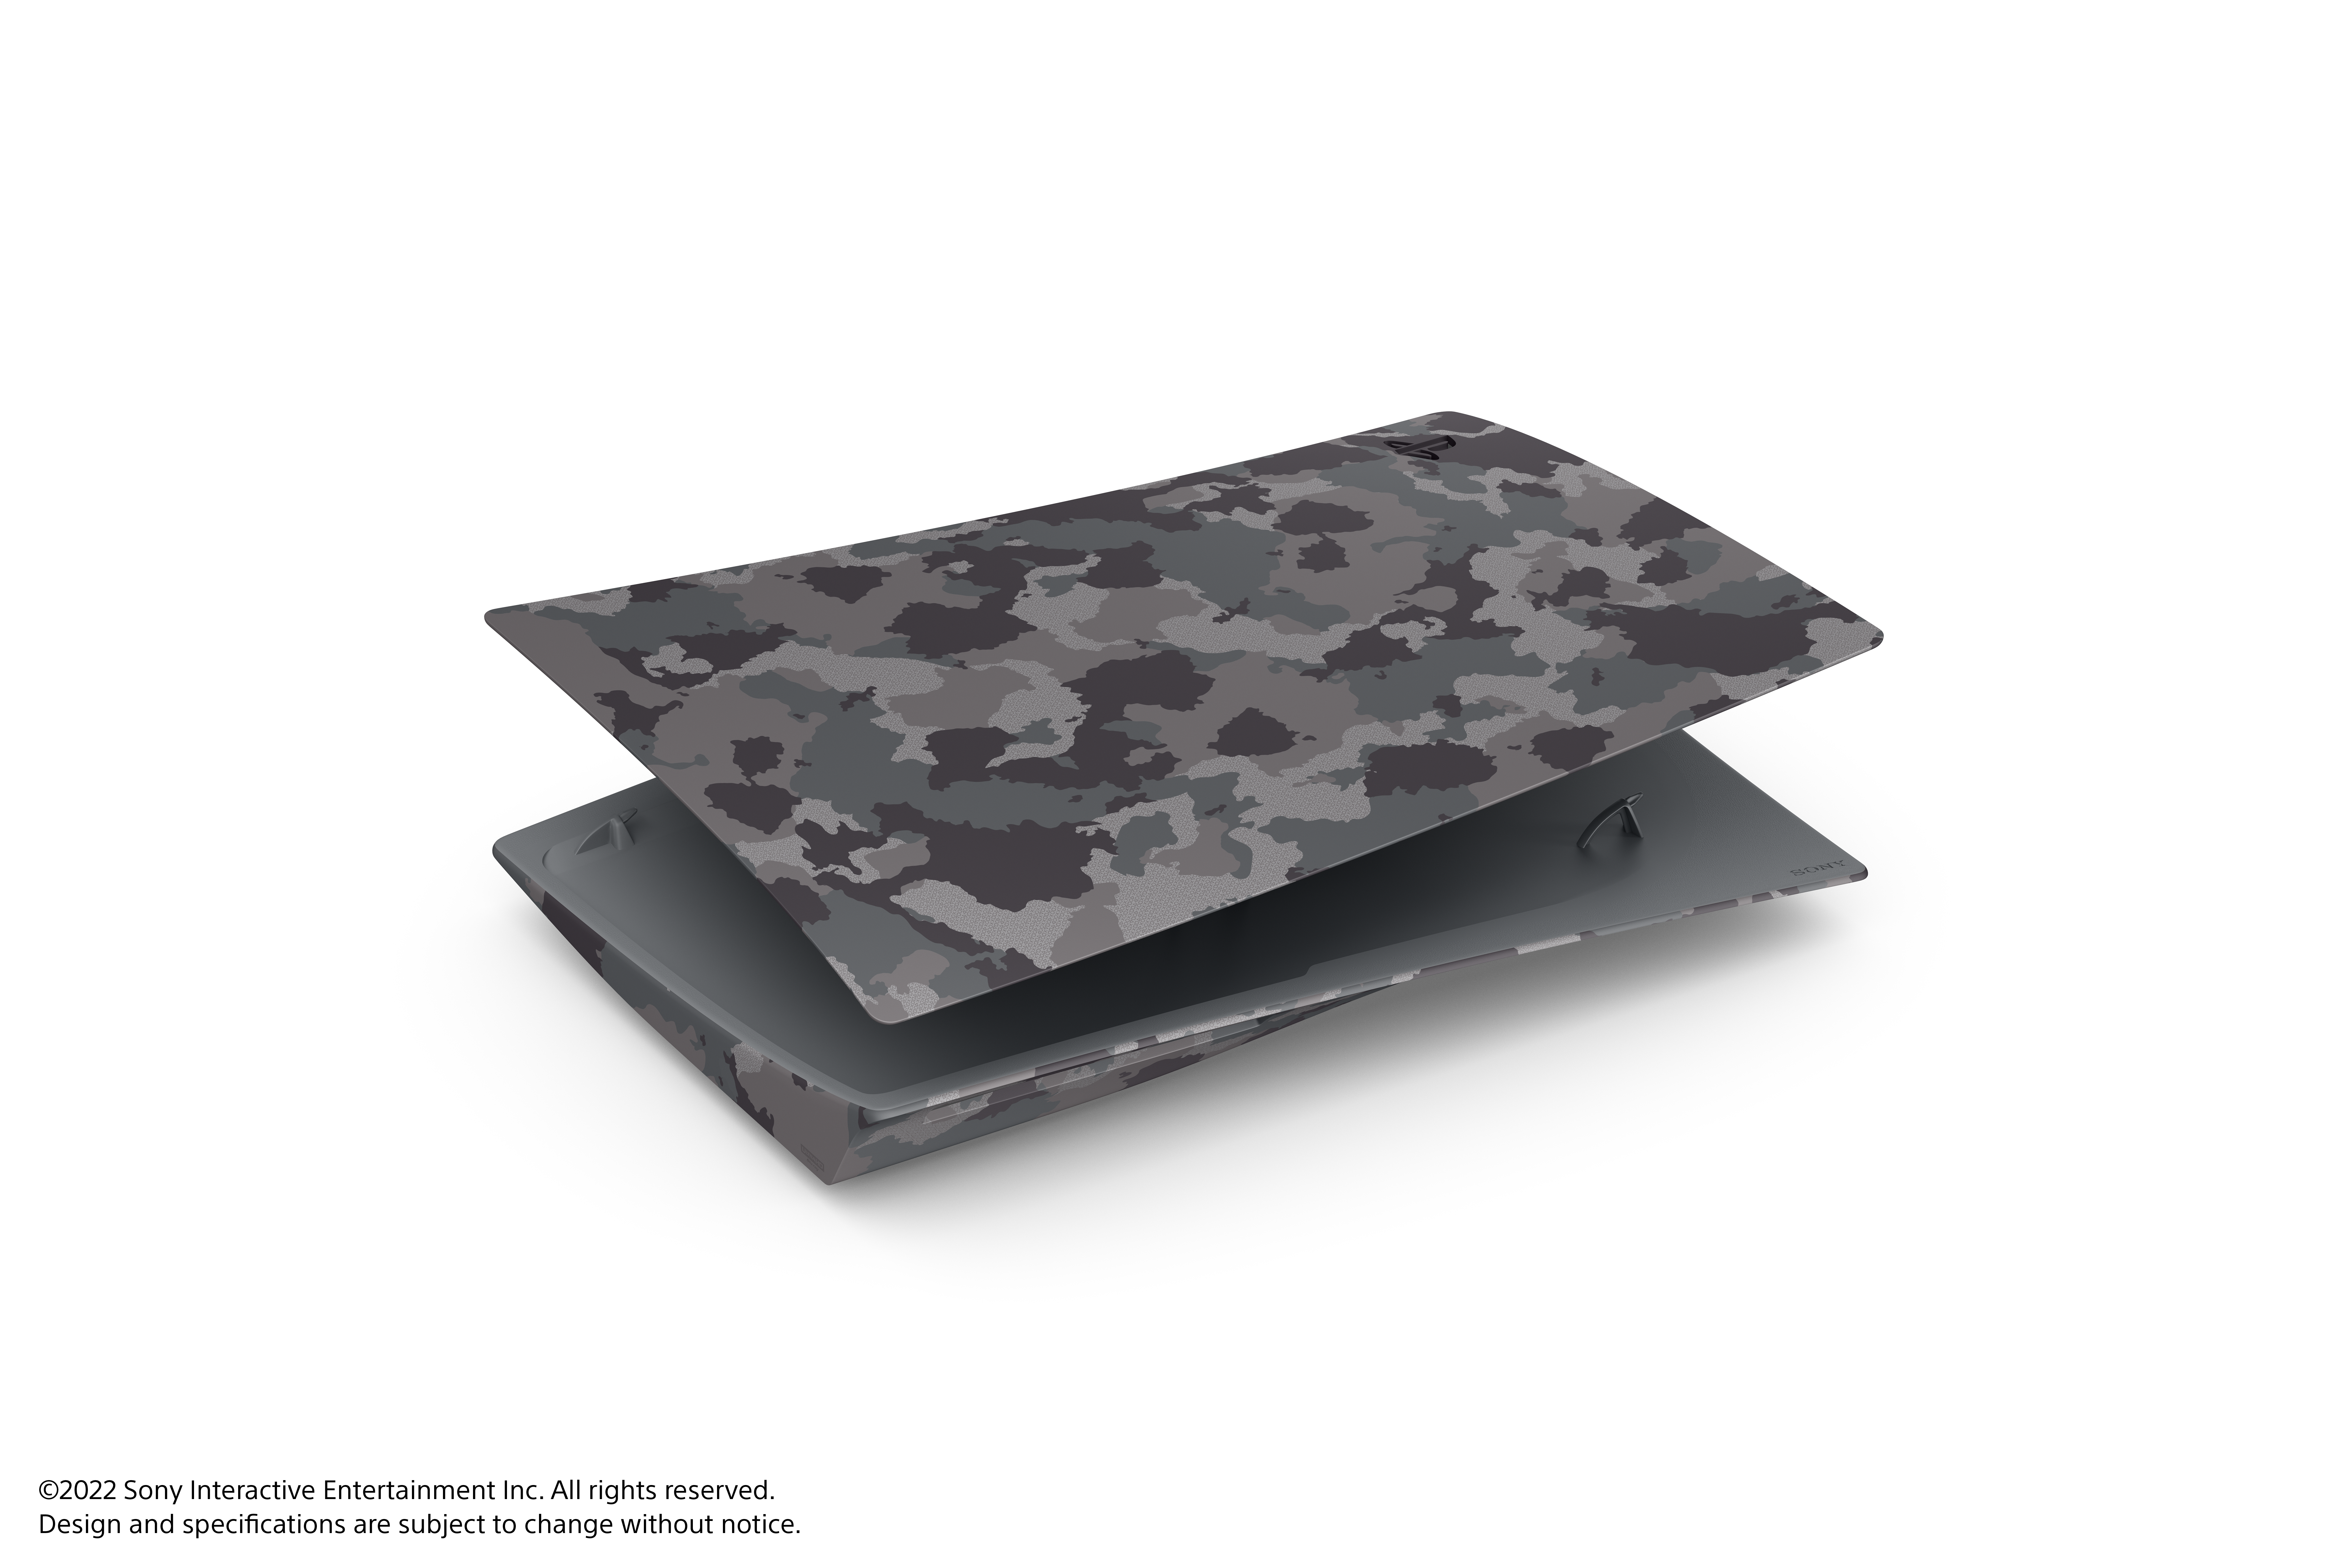 🎮 Coque PS5 Édition Standard en Camouflage ! 🌲🎮 ✨ Design camouflage  unique ✨ Matériau de qualité pour protéger votre PS5 des rayures et…